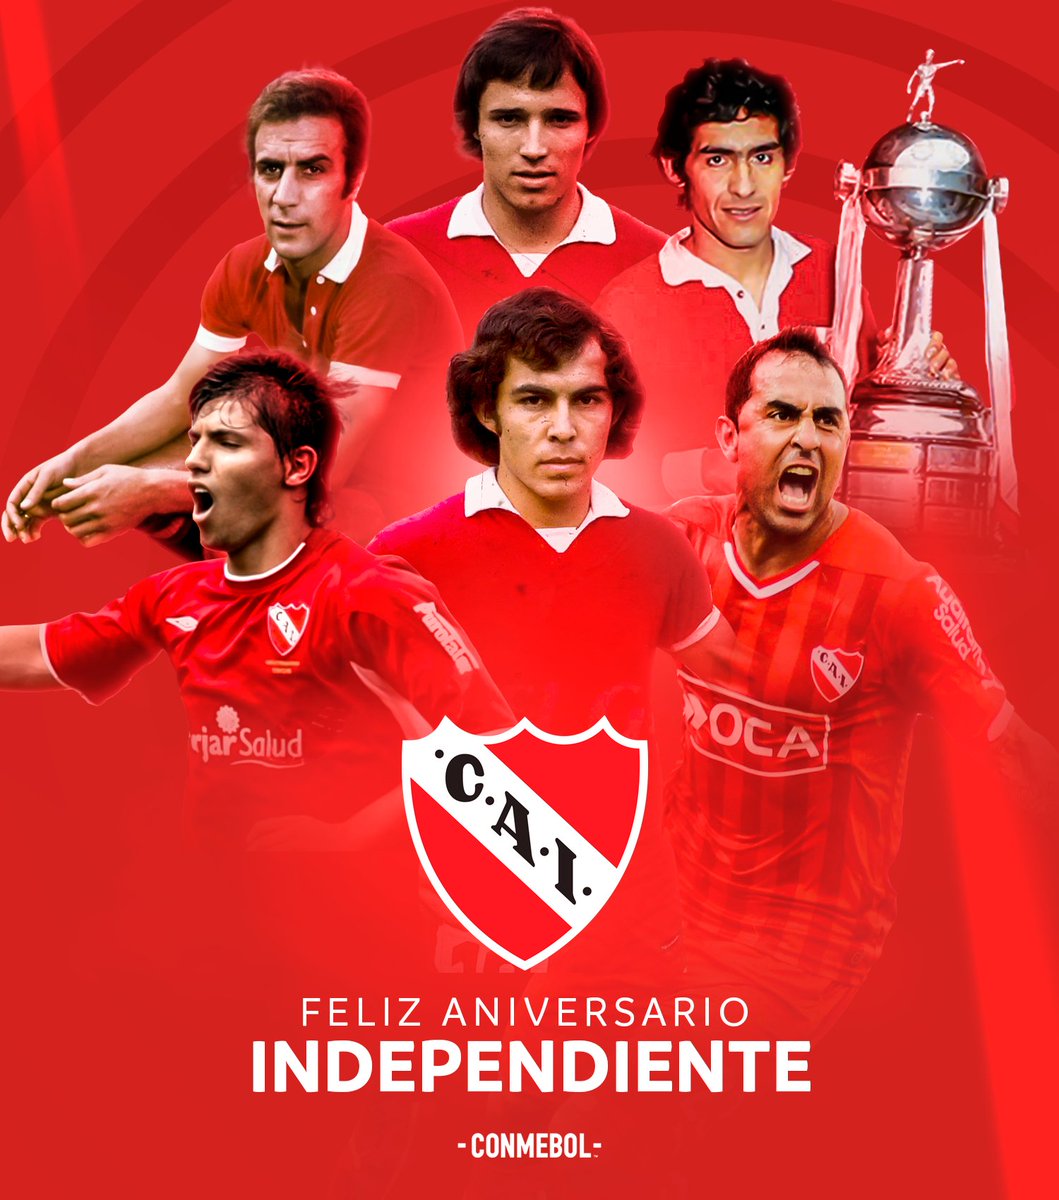 Hoy cumple 25 años la Sede Boyacá de #Independiente ‼🇦🇹👏